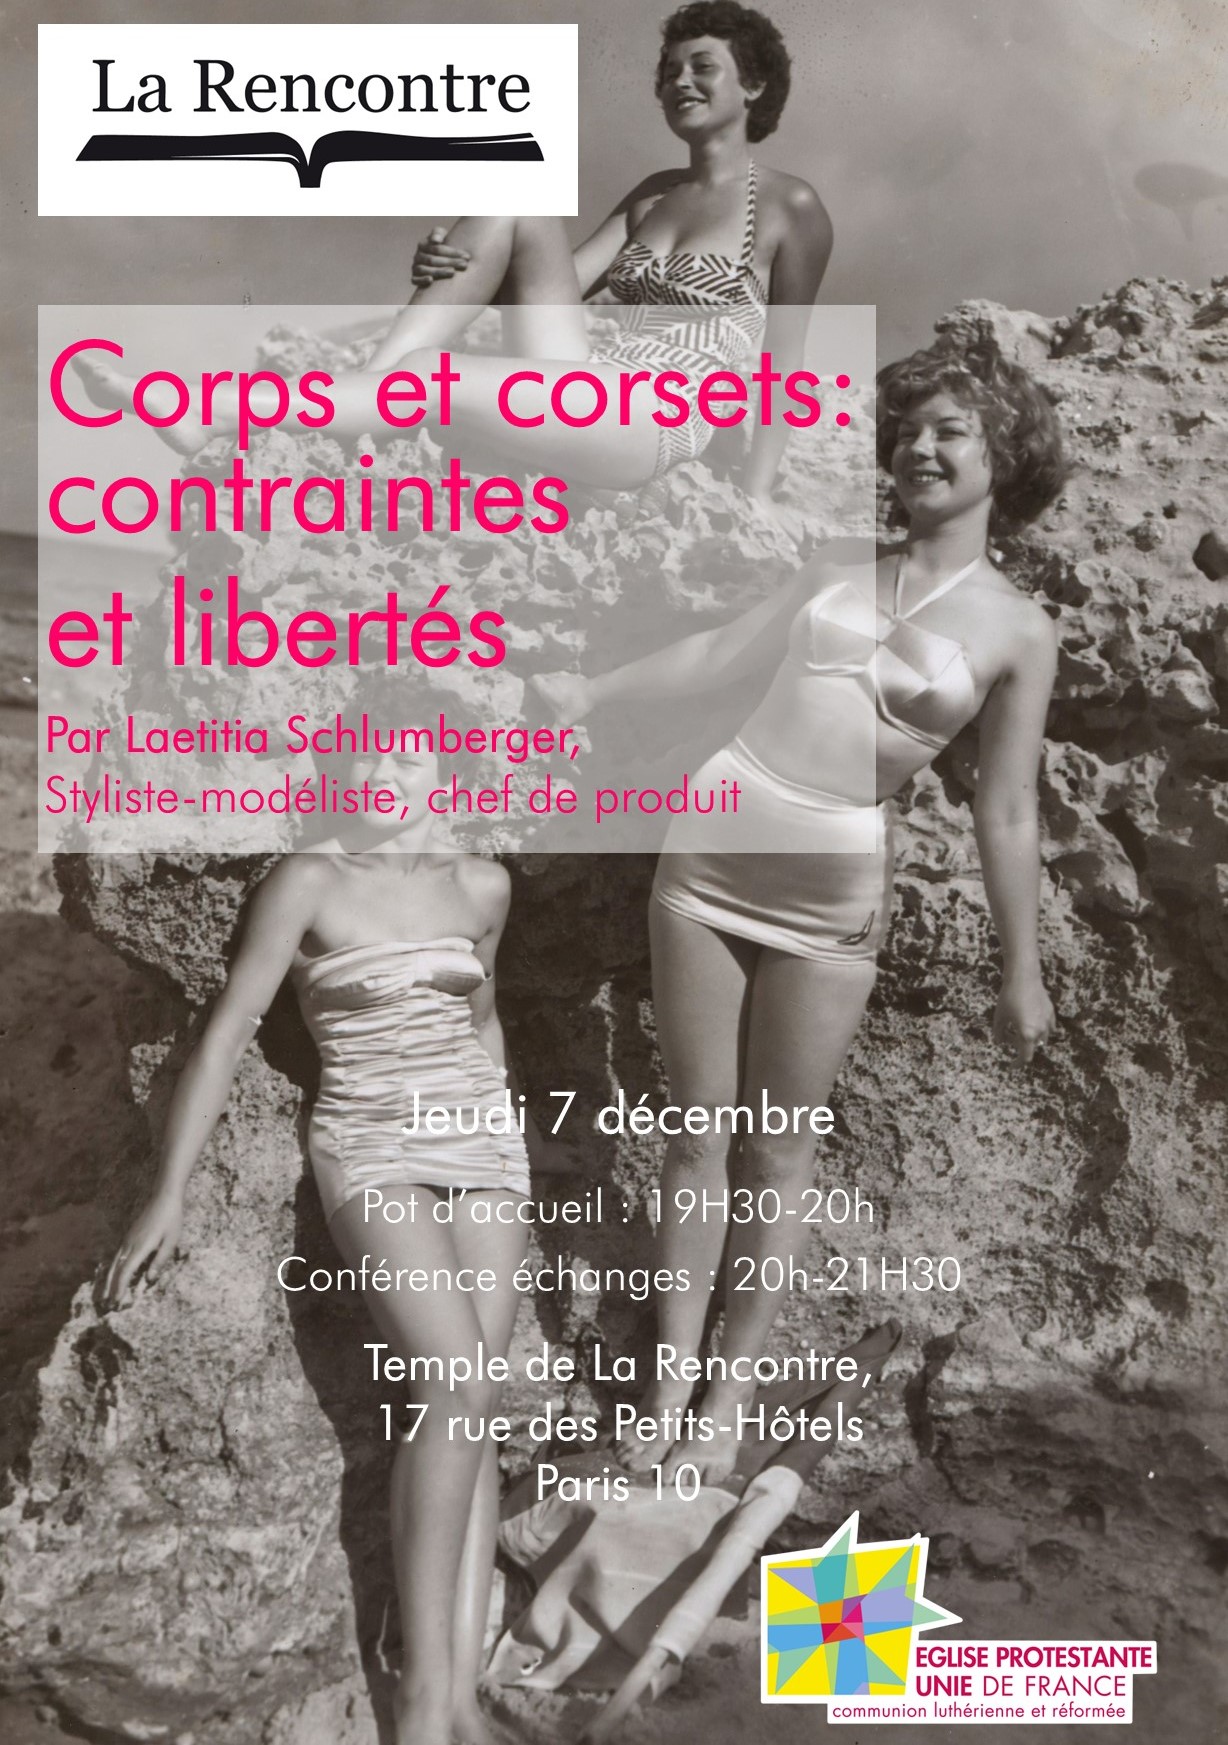 "Corps et corsets : contraintes et libertés", une conférence menée par Laetitia Schlumberger, Styliste-modéliste, chef de produit